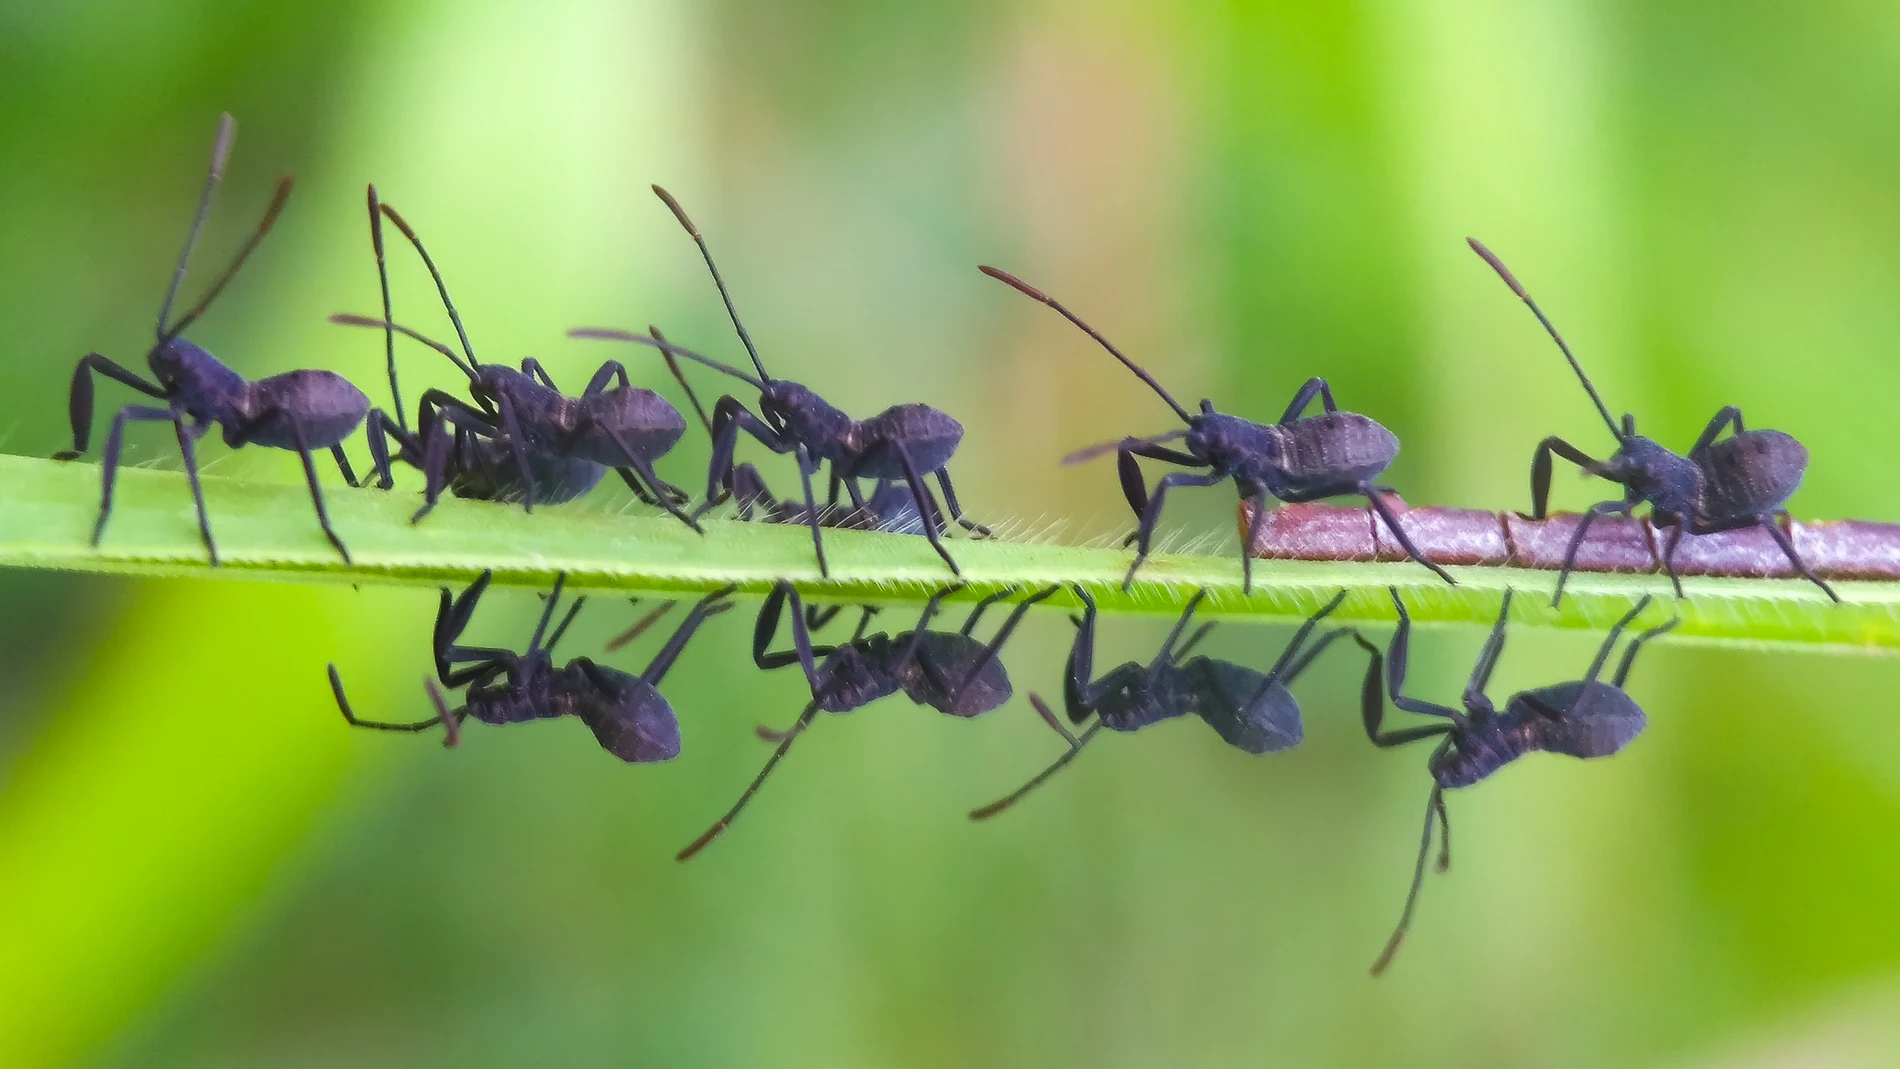 "Muchos servicios son prestados por insectos. La polinización es la más obvia, muchos cultivos dependen de ellos"